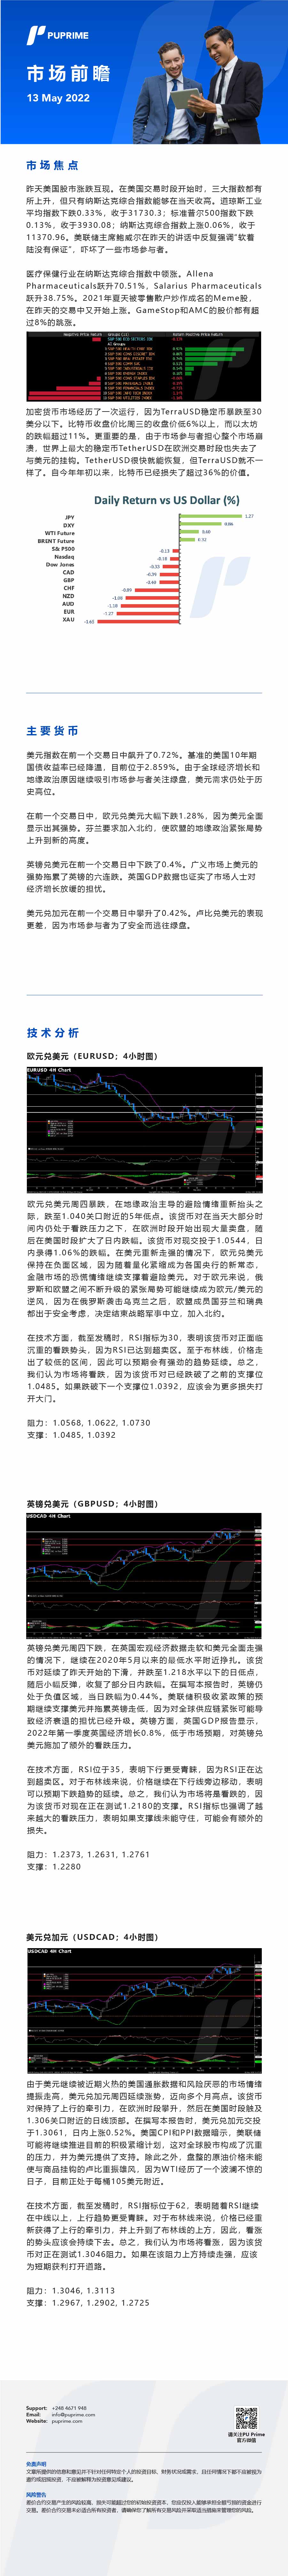 13052022 Daily Market Analysis__CHN.jpg